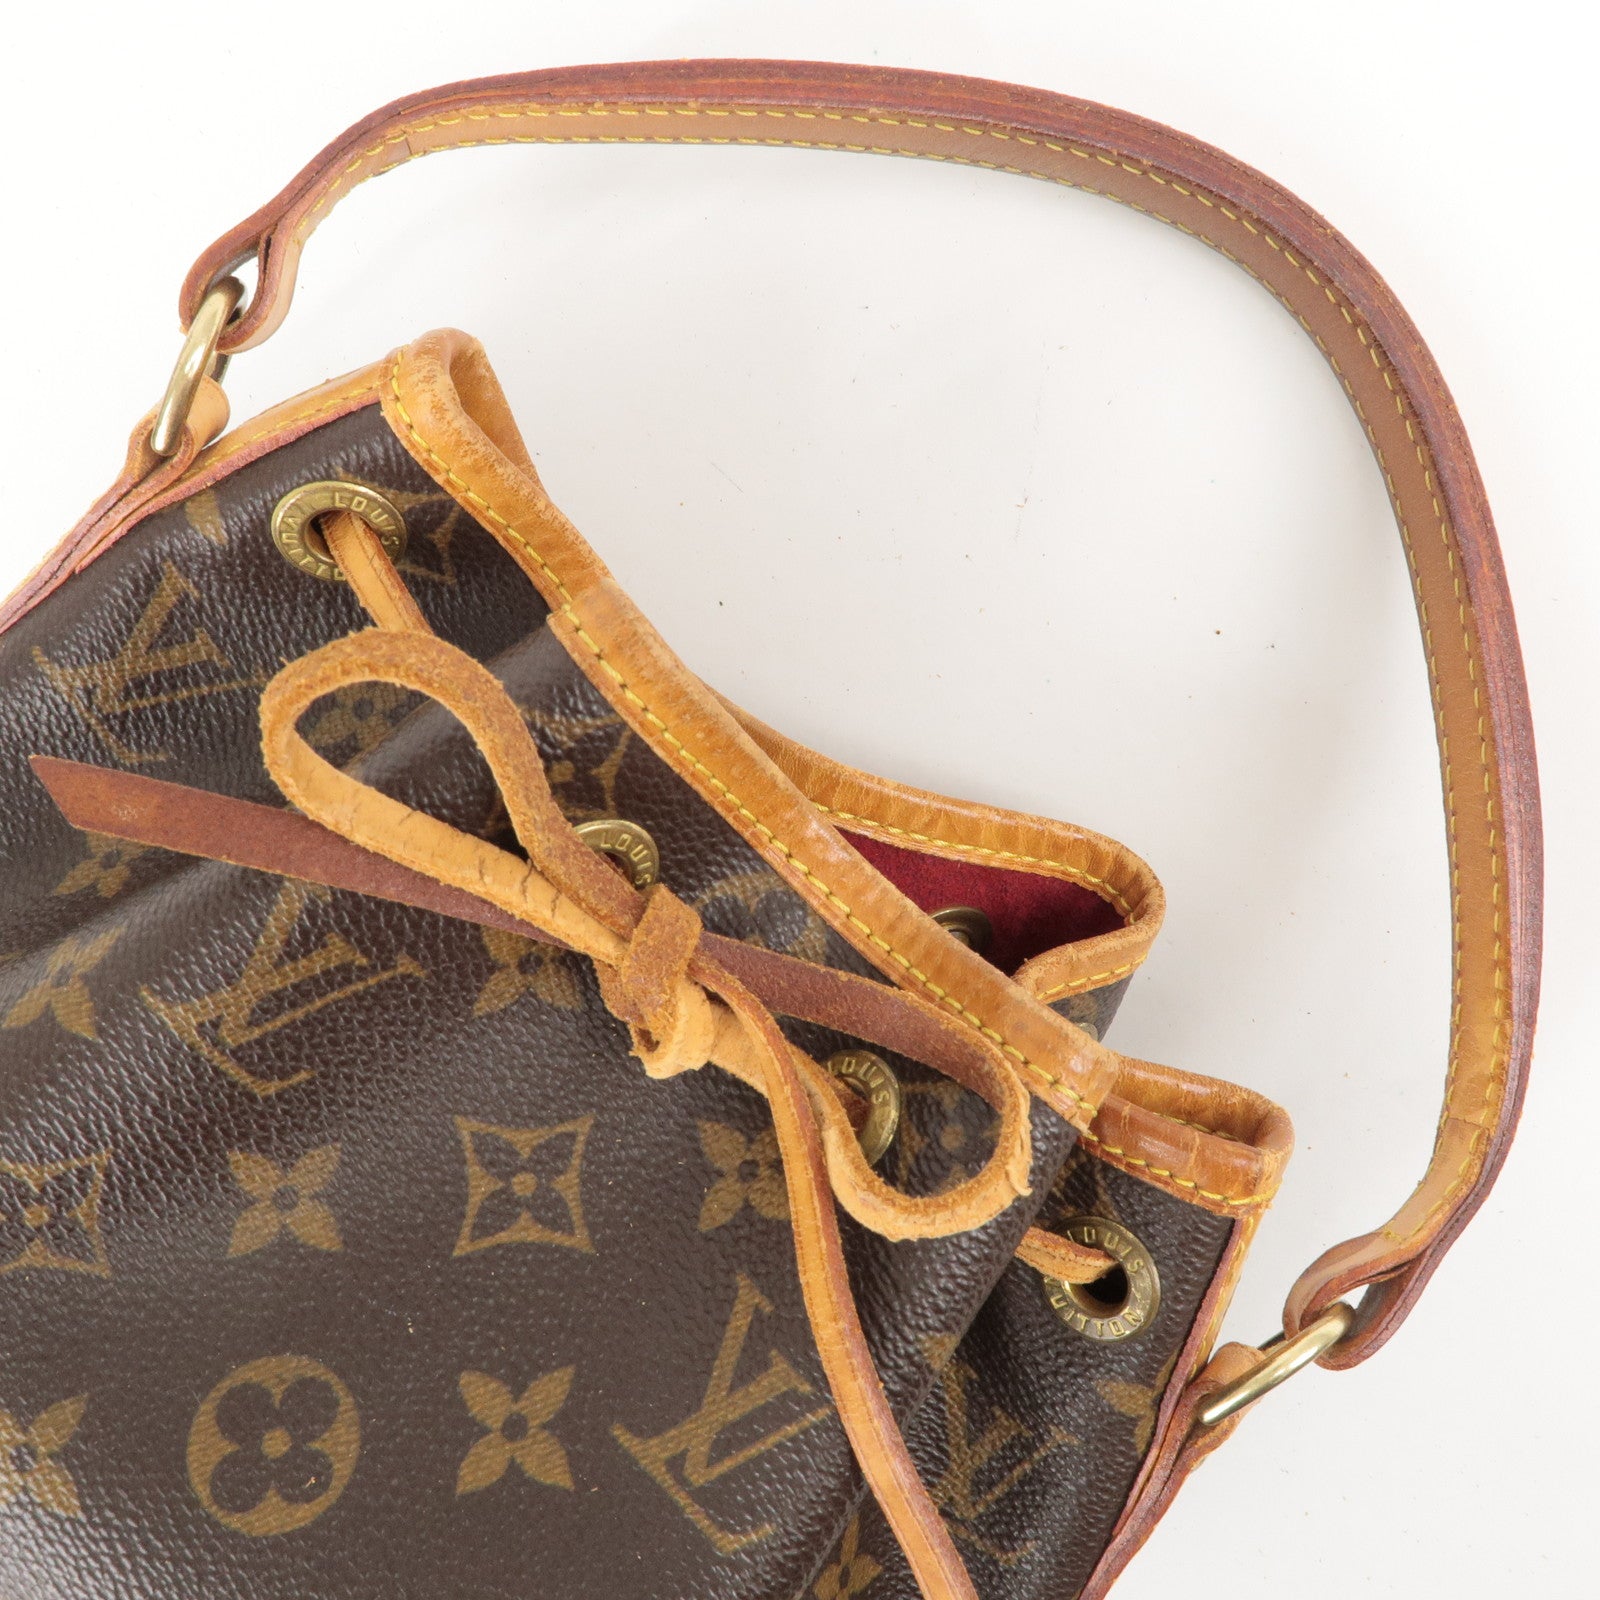 Louis-Vuitton-Monogram-Mini-Noe-Japan-Limited-Edition-M99162 – dct